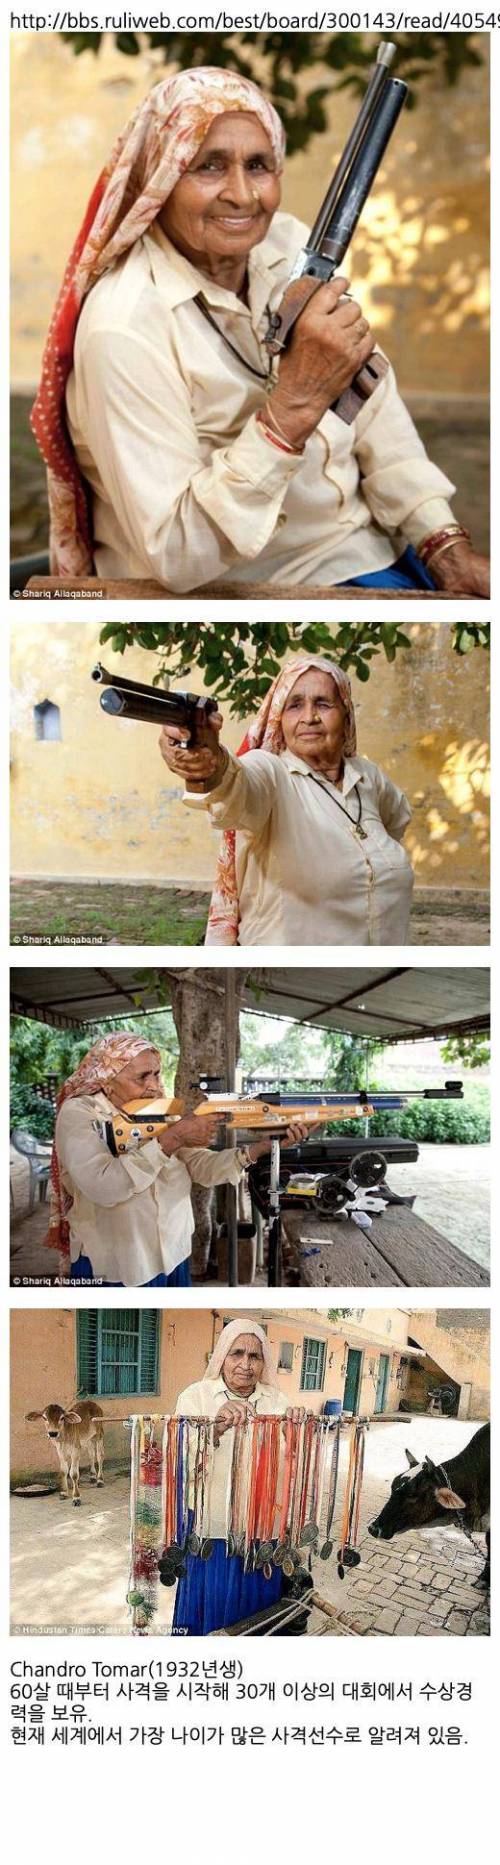 인도의 평범한 할머니.jpg